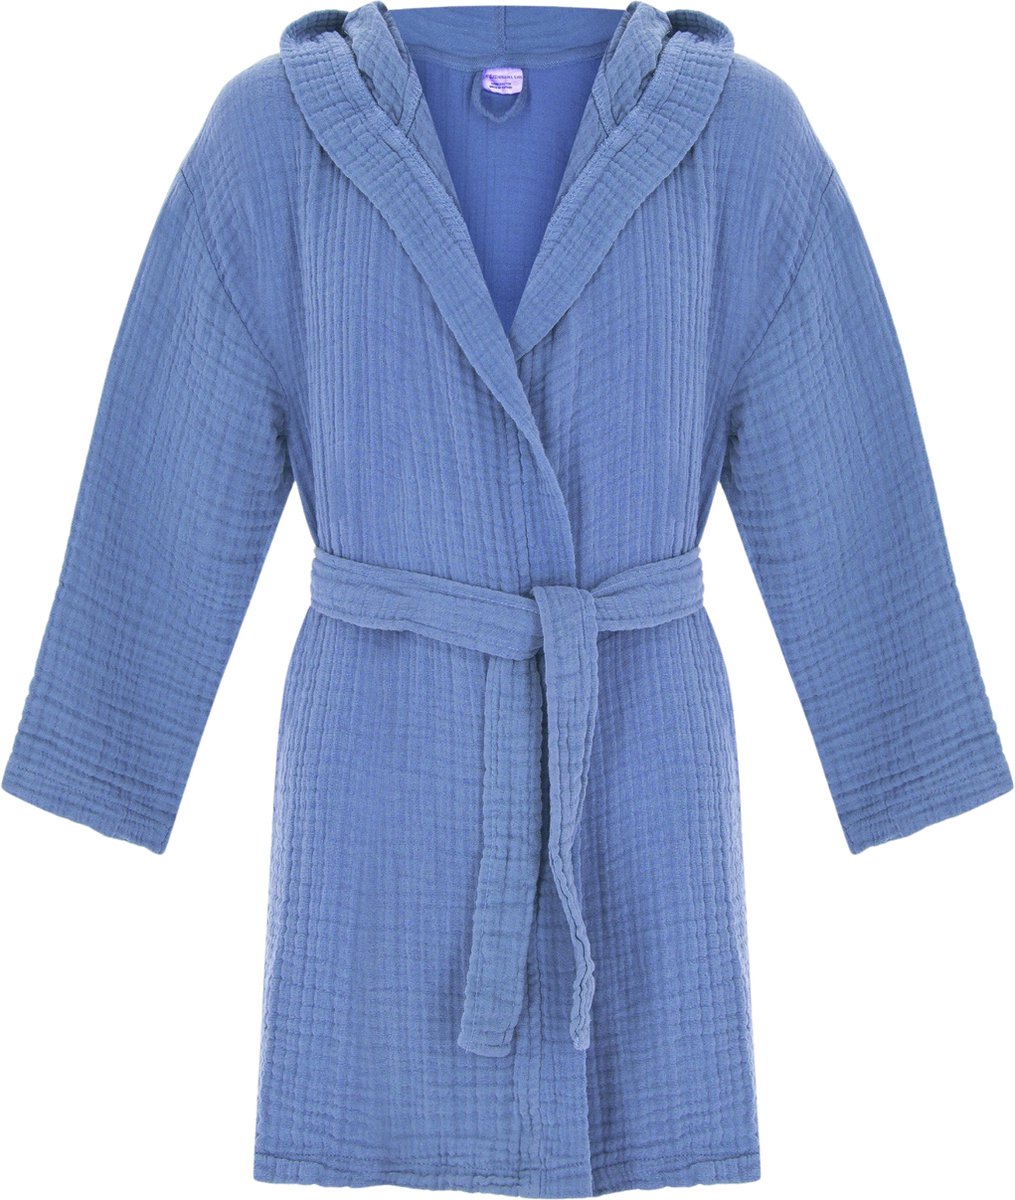 Badjas kind met capuchon | Mousseline 100% katoen | kinderbadjas voor jongens en meisjes | Douche & Zwembad & Strand | Blauw 3/4 jaar